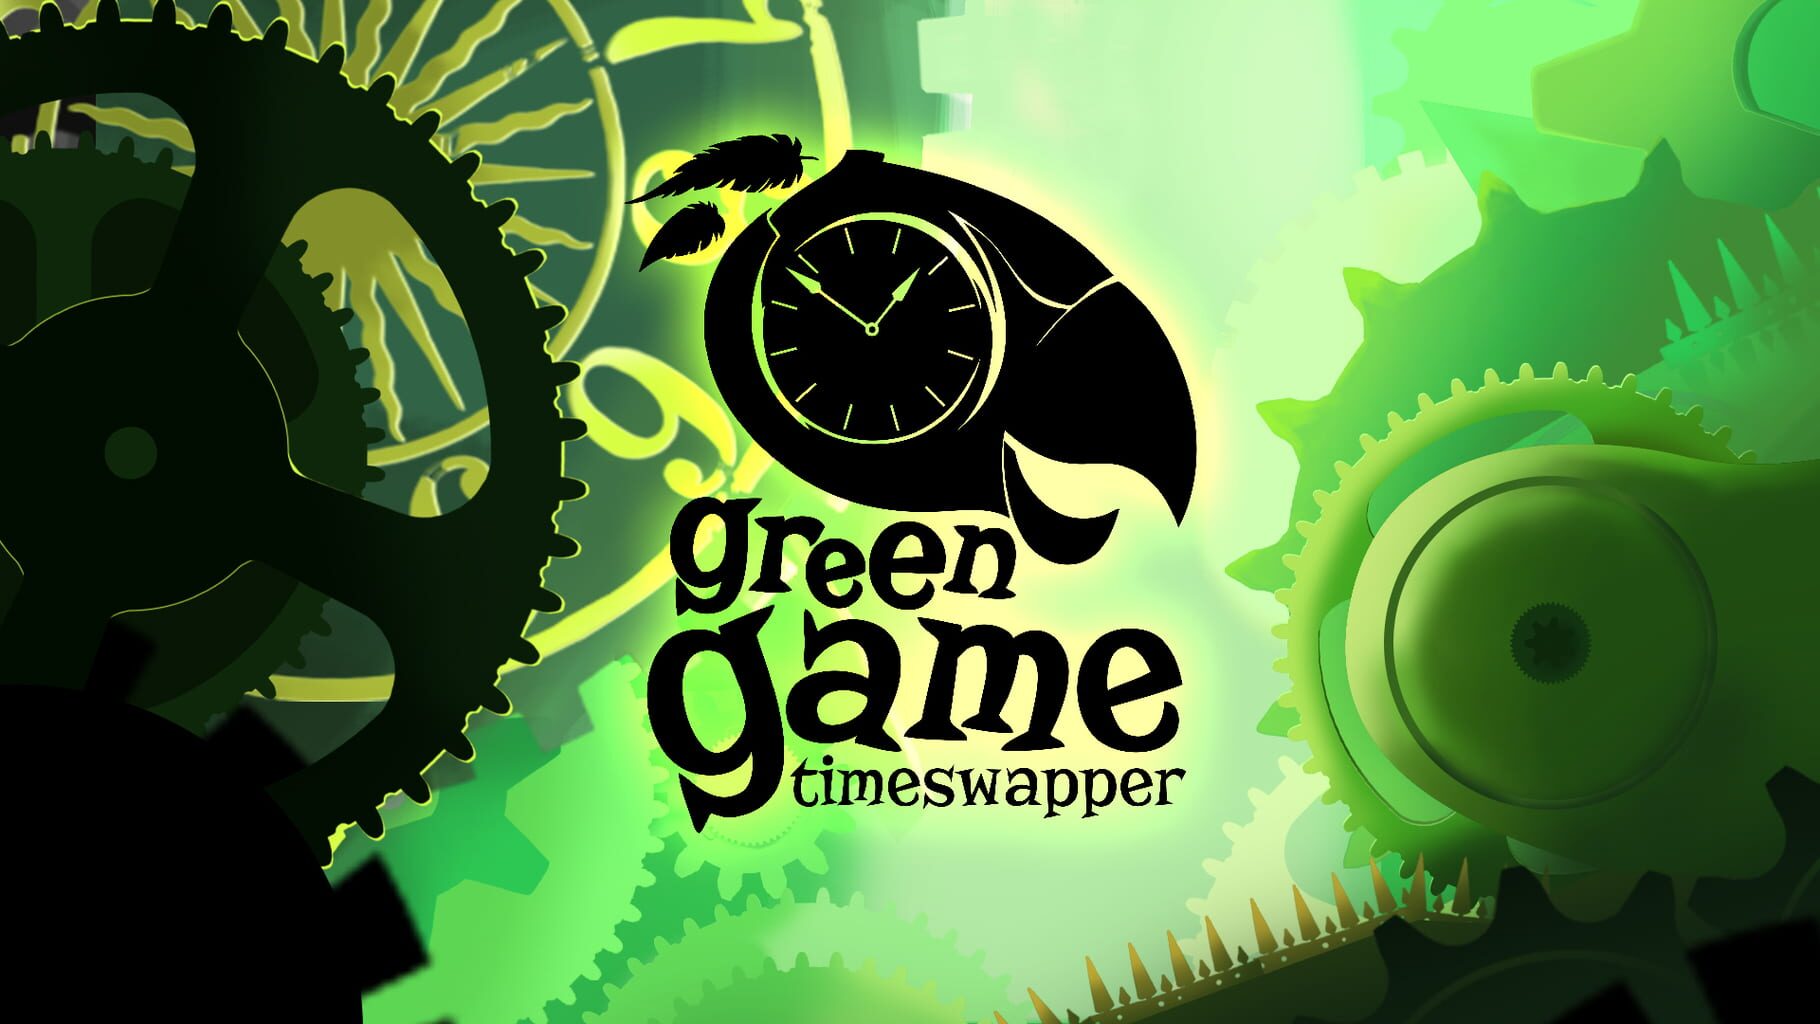 Green Game: TimeSwapper artwork